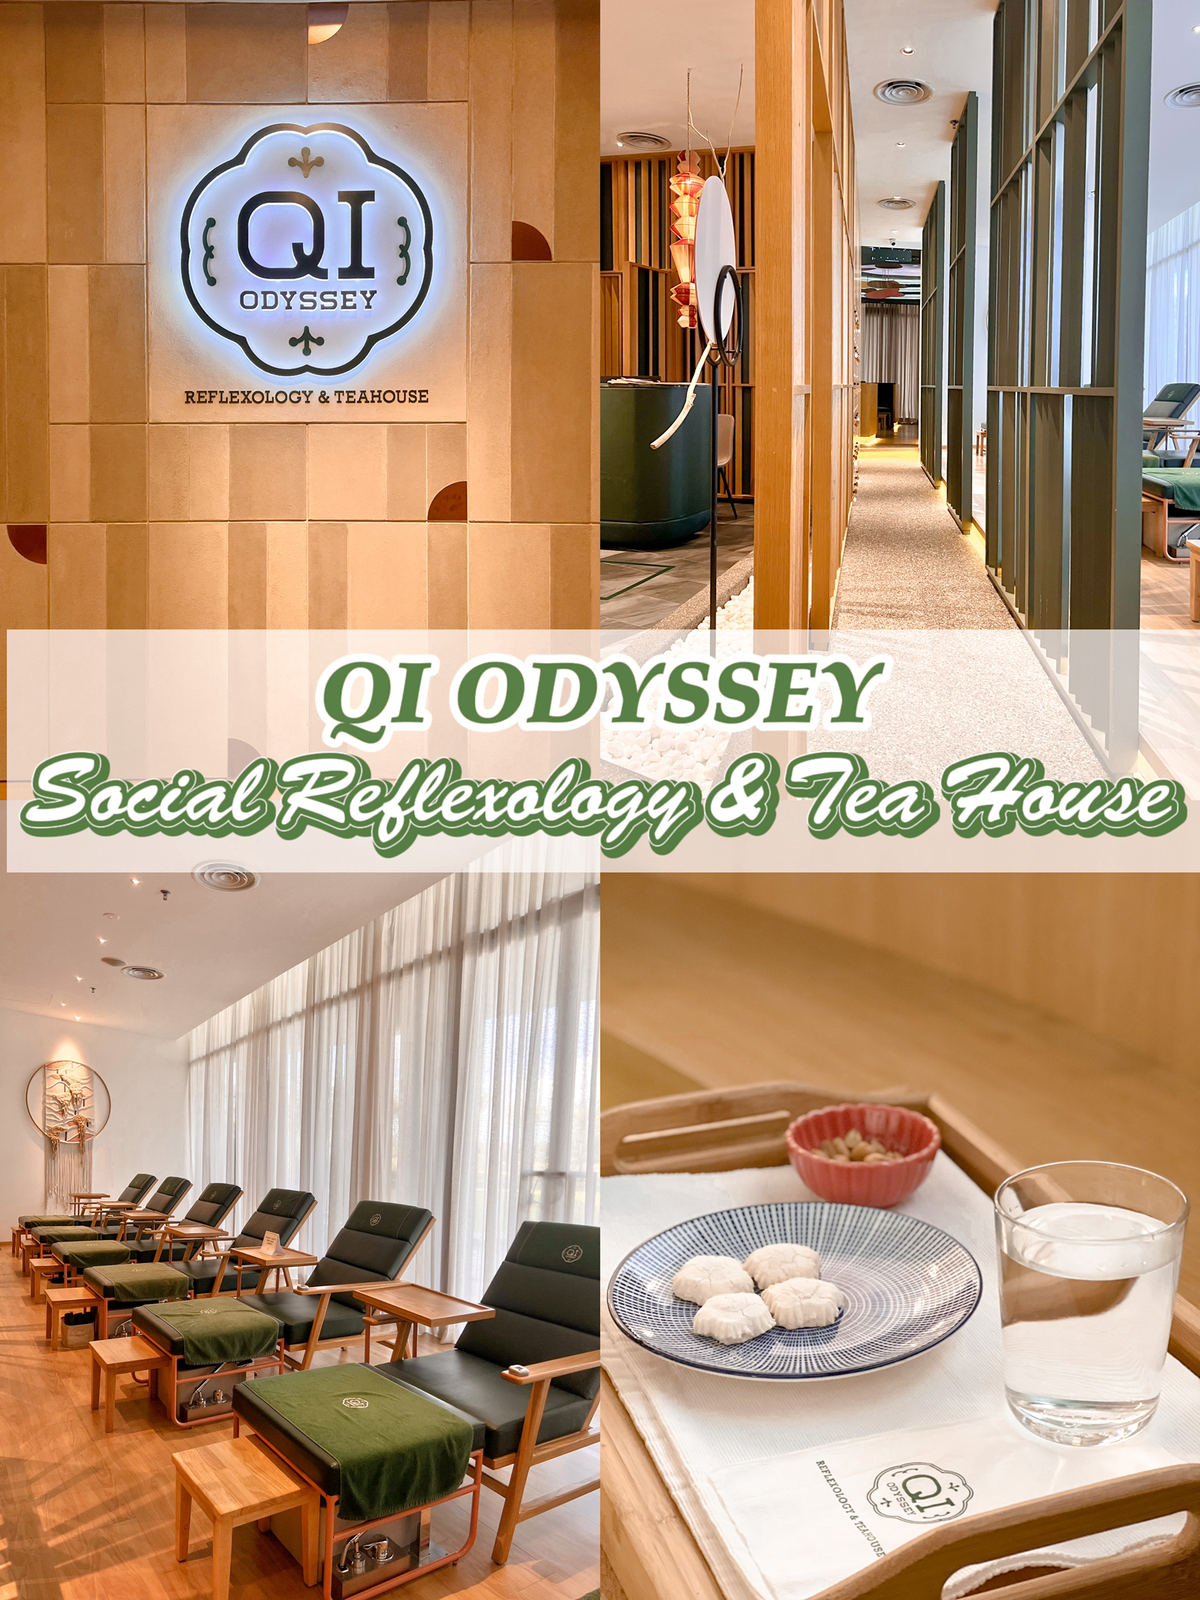 Qi odyssey